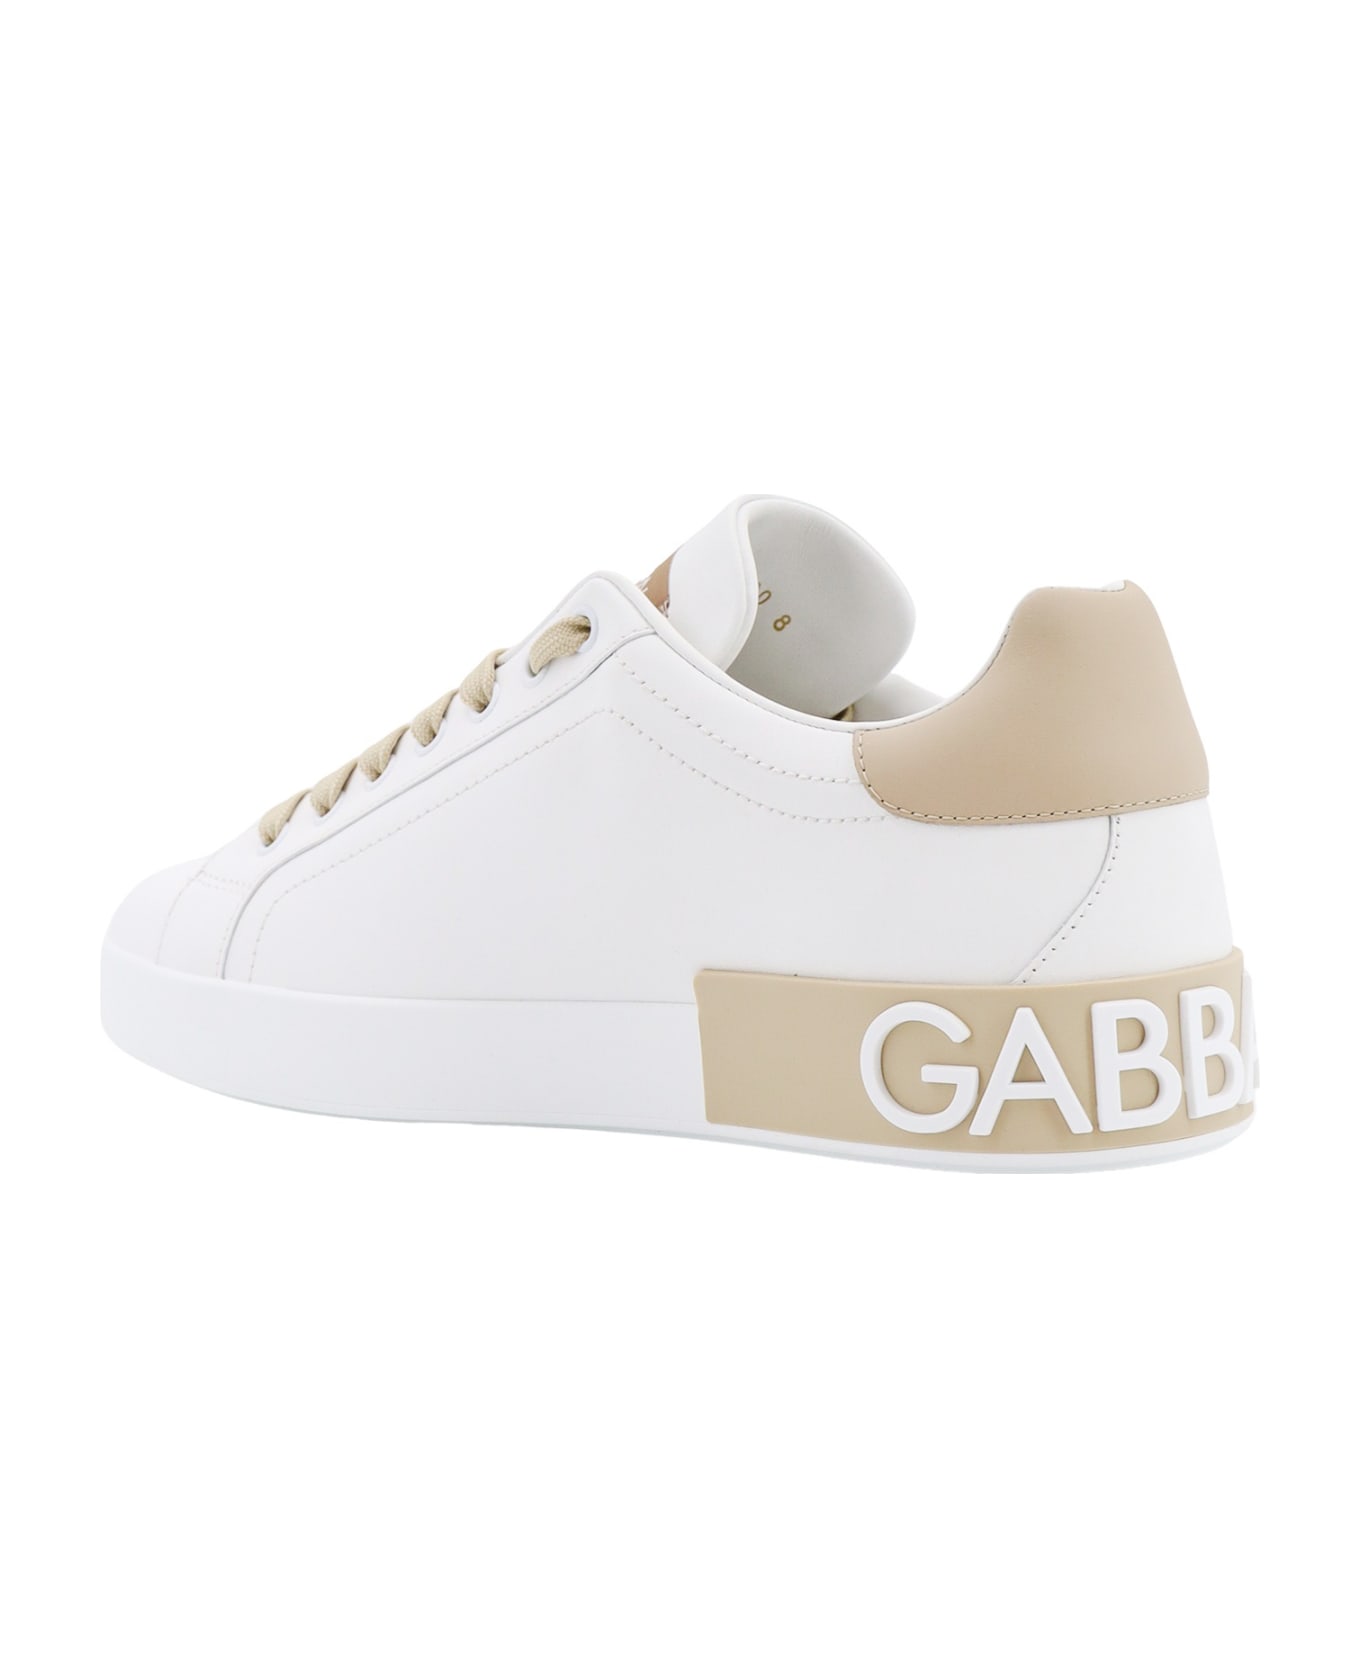 Dolce & Gabbana Portofino Calf Leather Sneaker - Beige